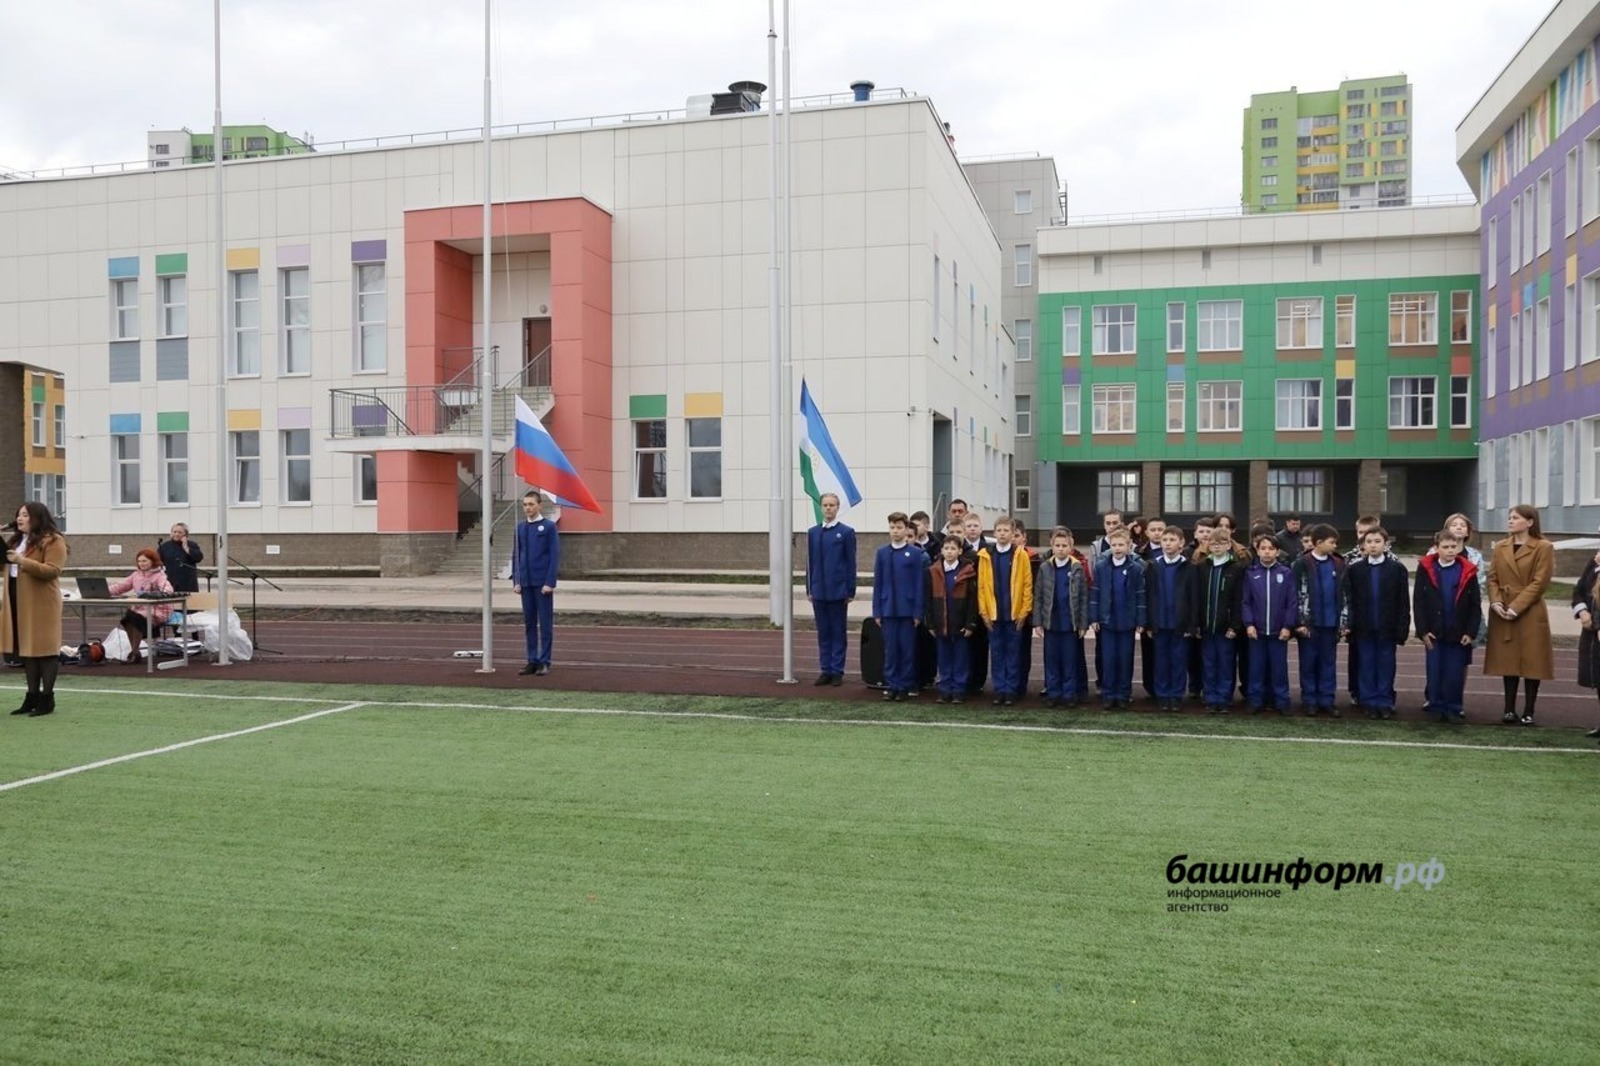 Новая патриотическая традиция: в школах Башкирии поднимают флаги